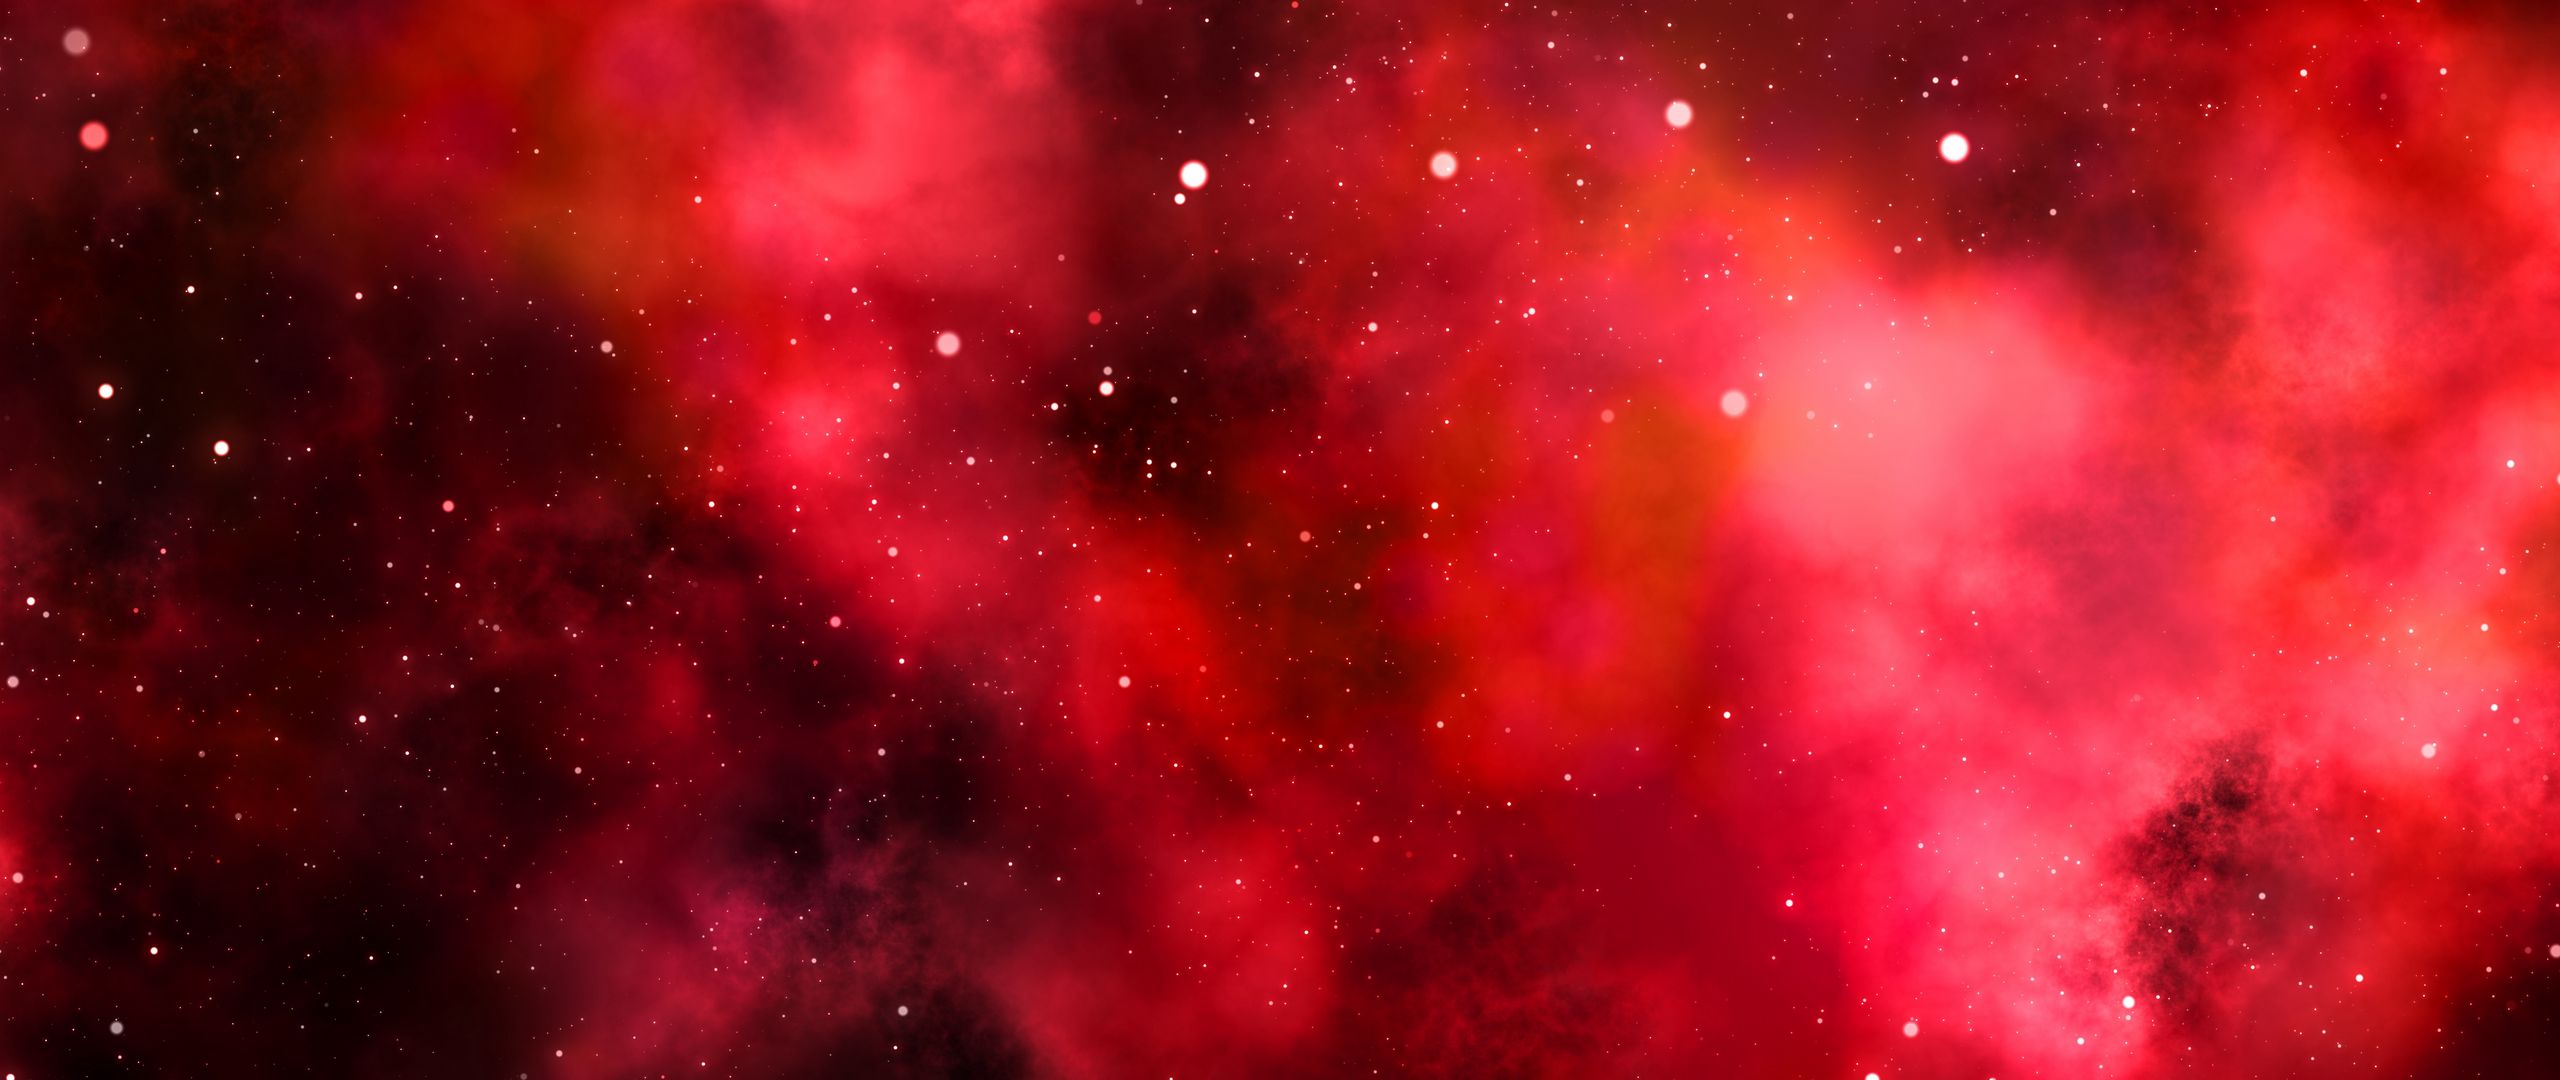 galaxie s7 wallpaper hd 1080p,nebel,rot,astronomisches objekt,rosa,himmel